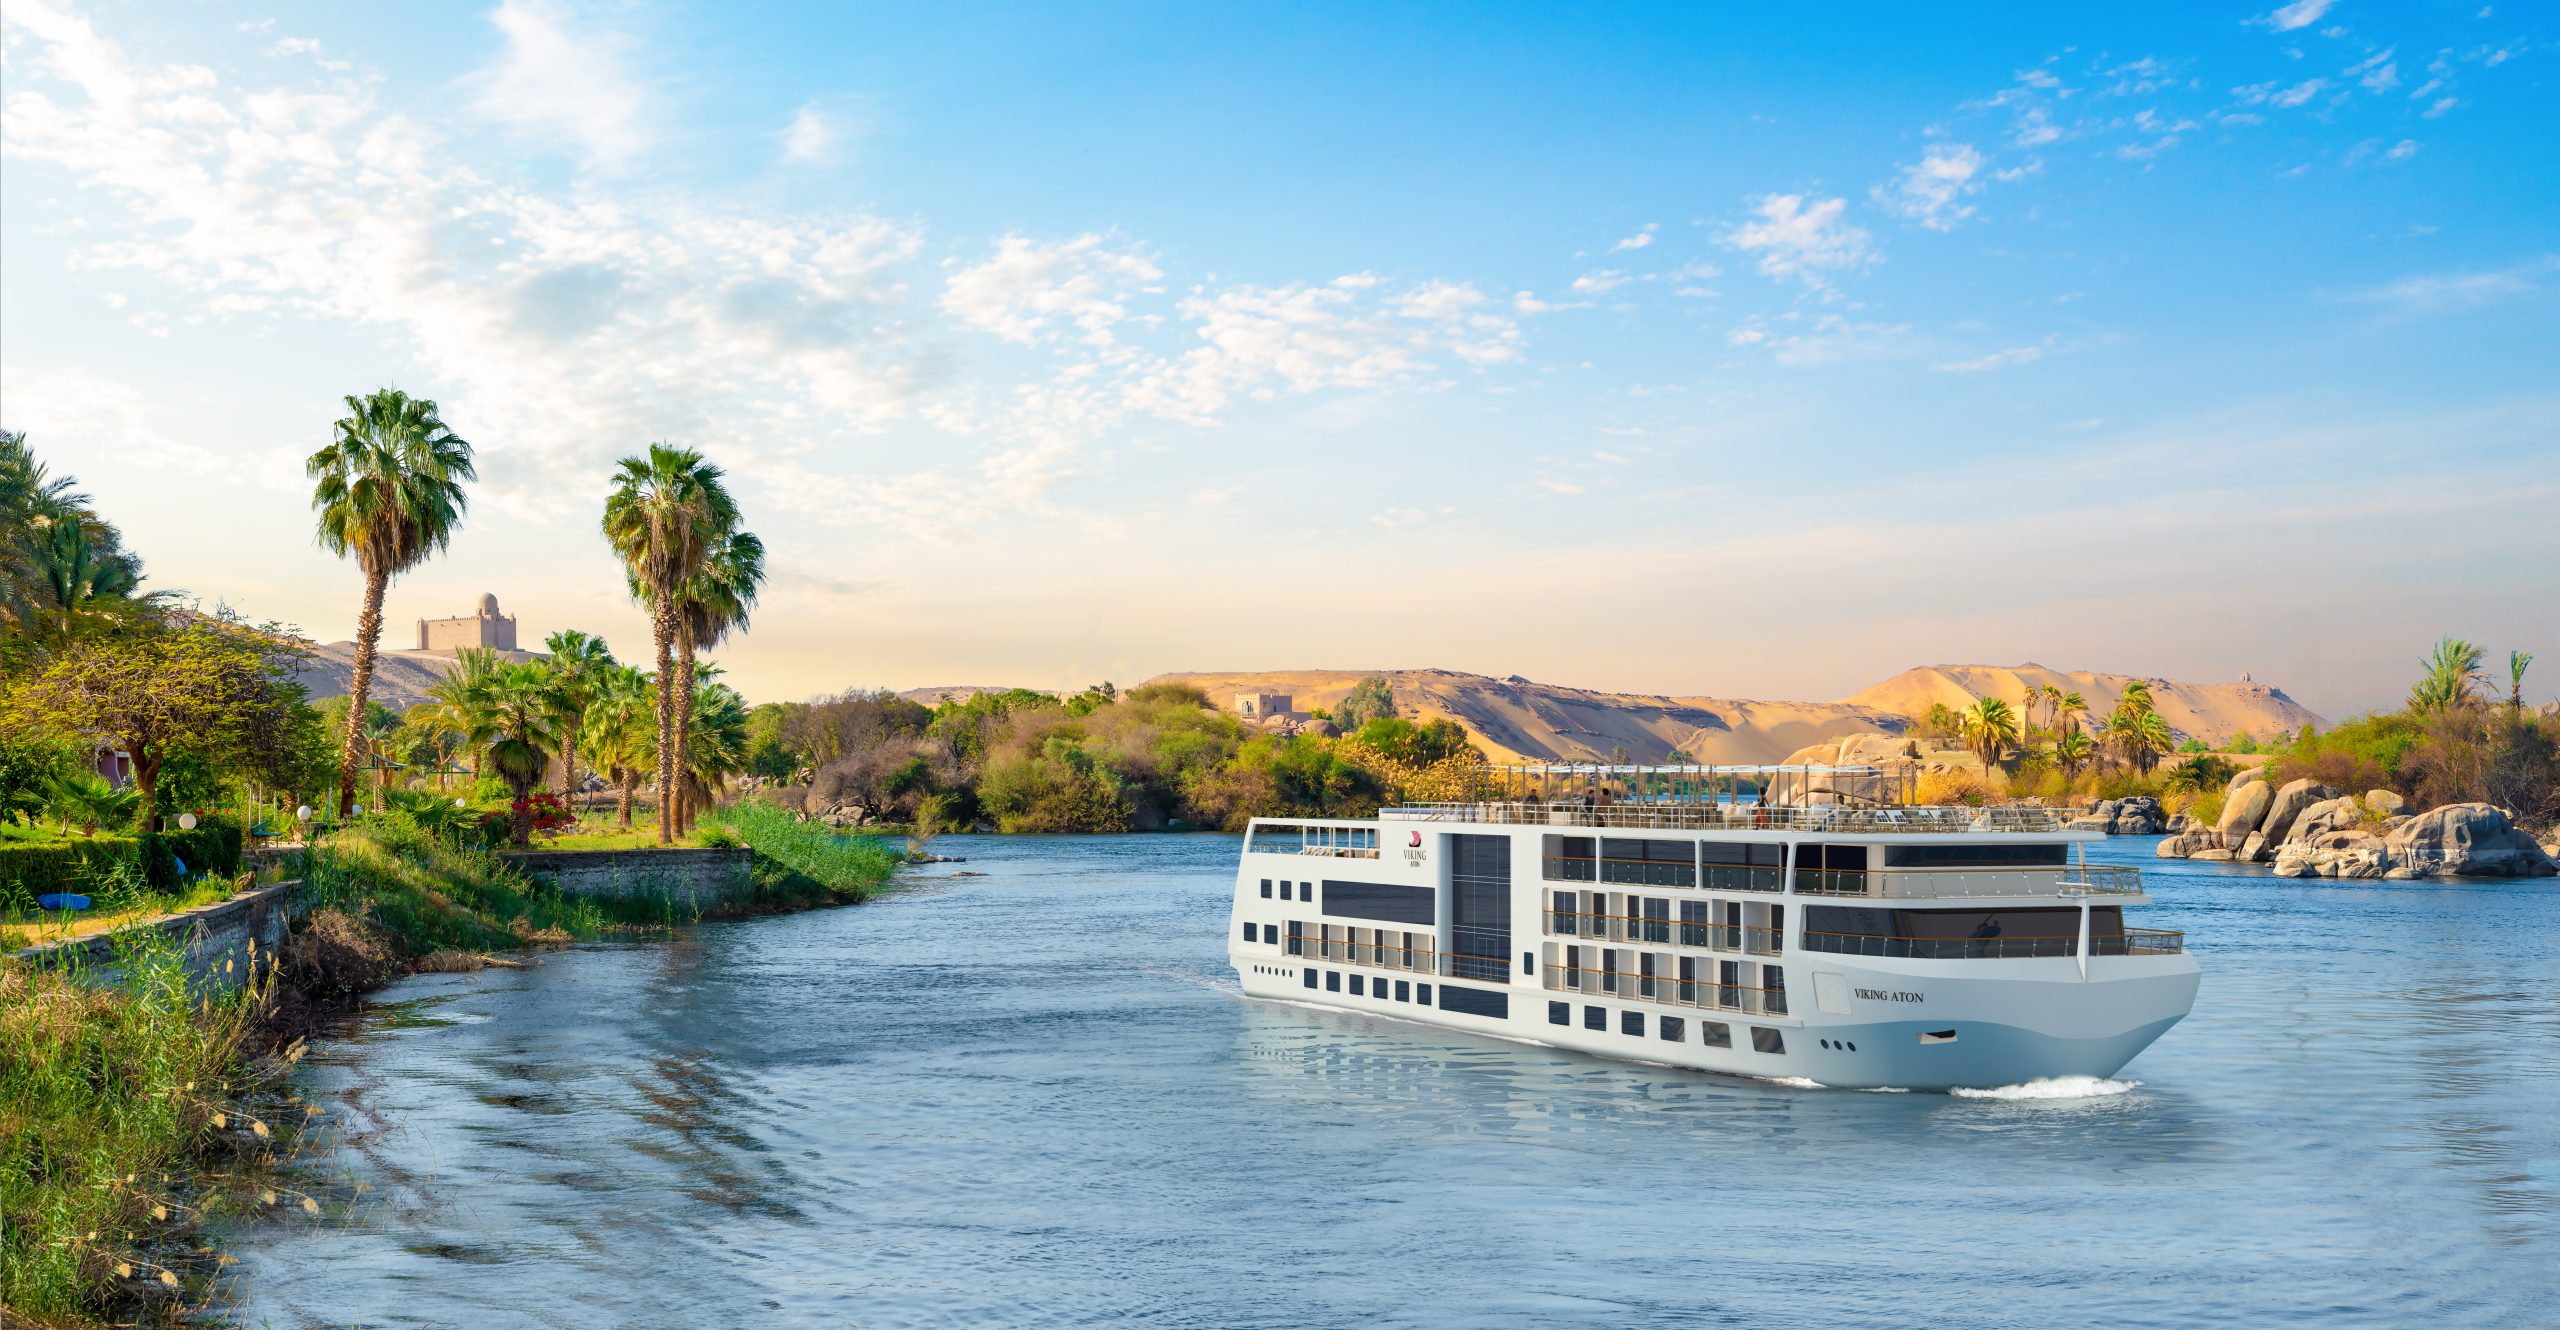 nile river cruise 2022